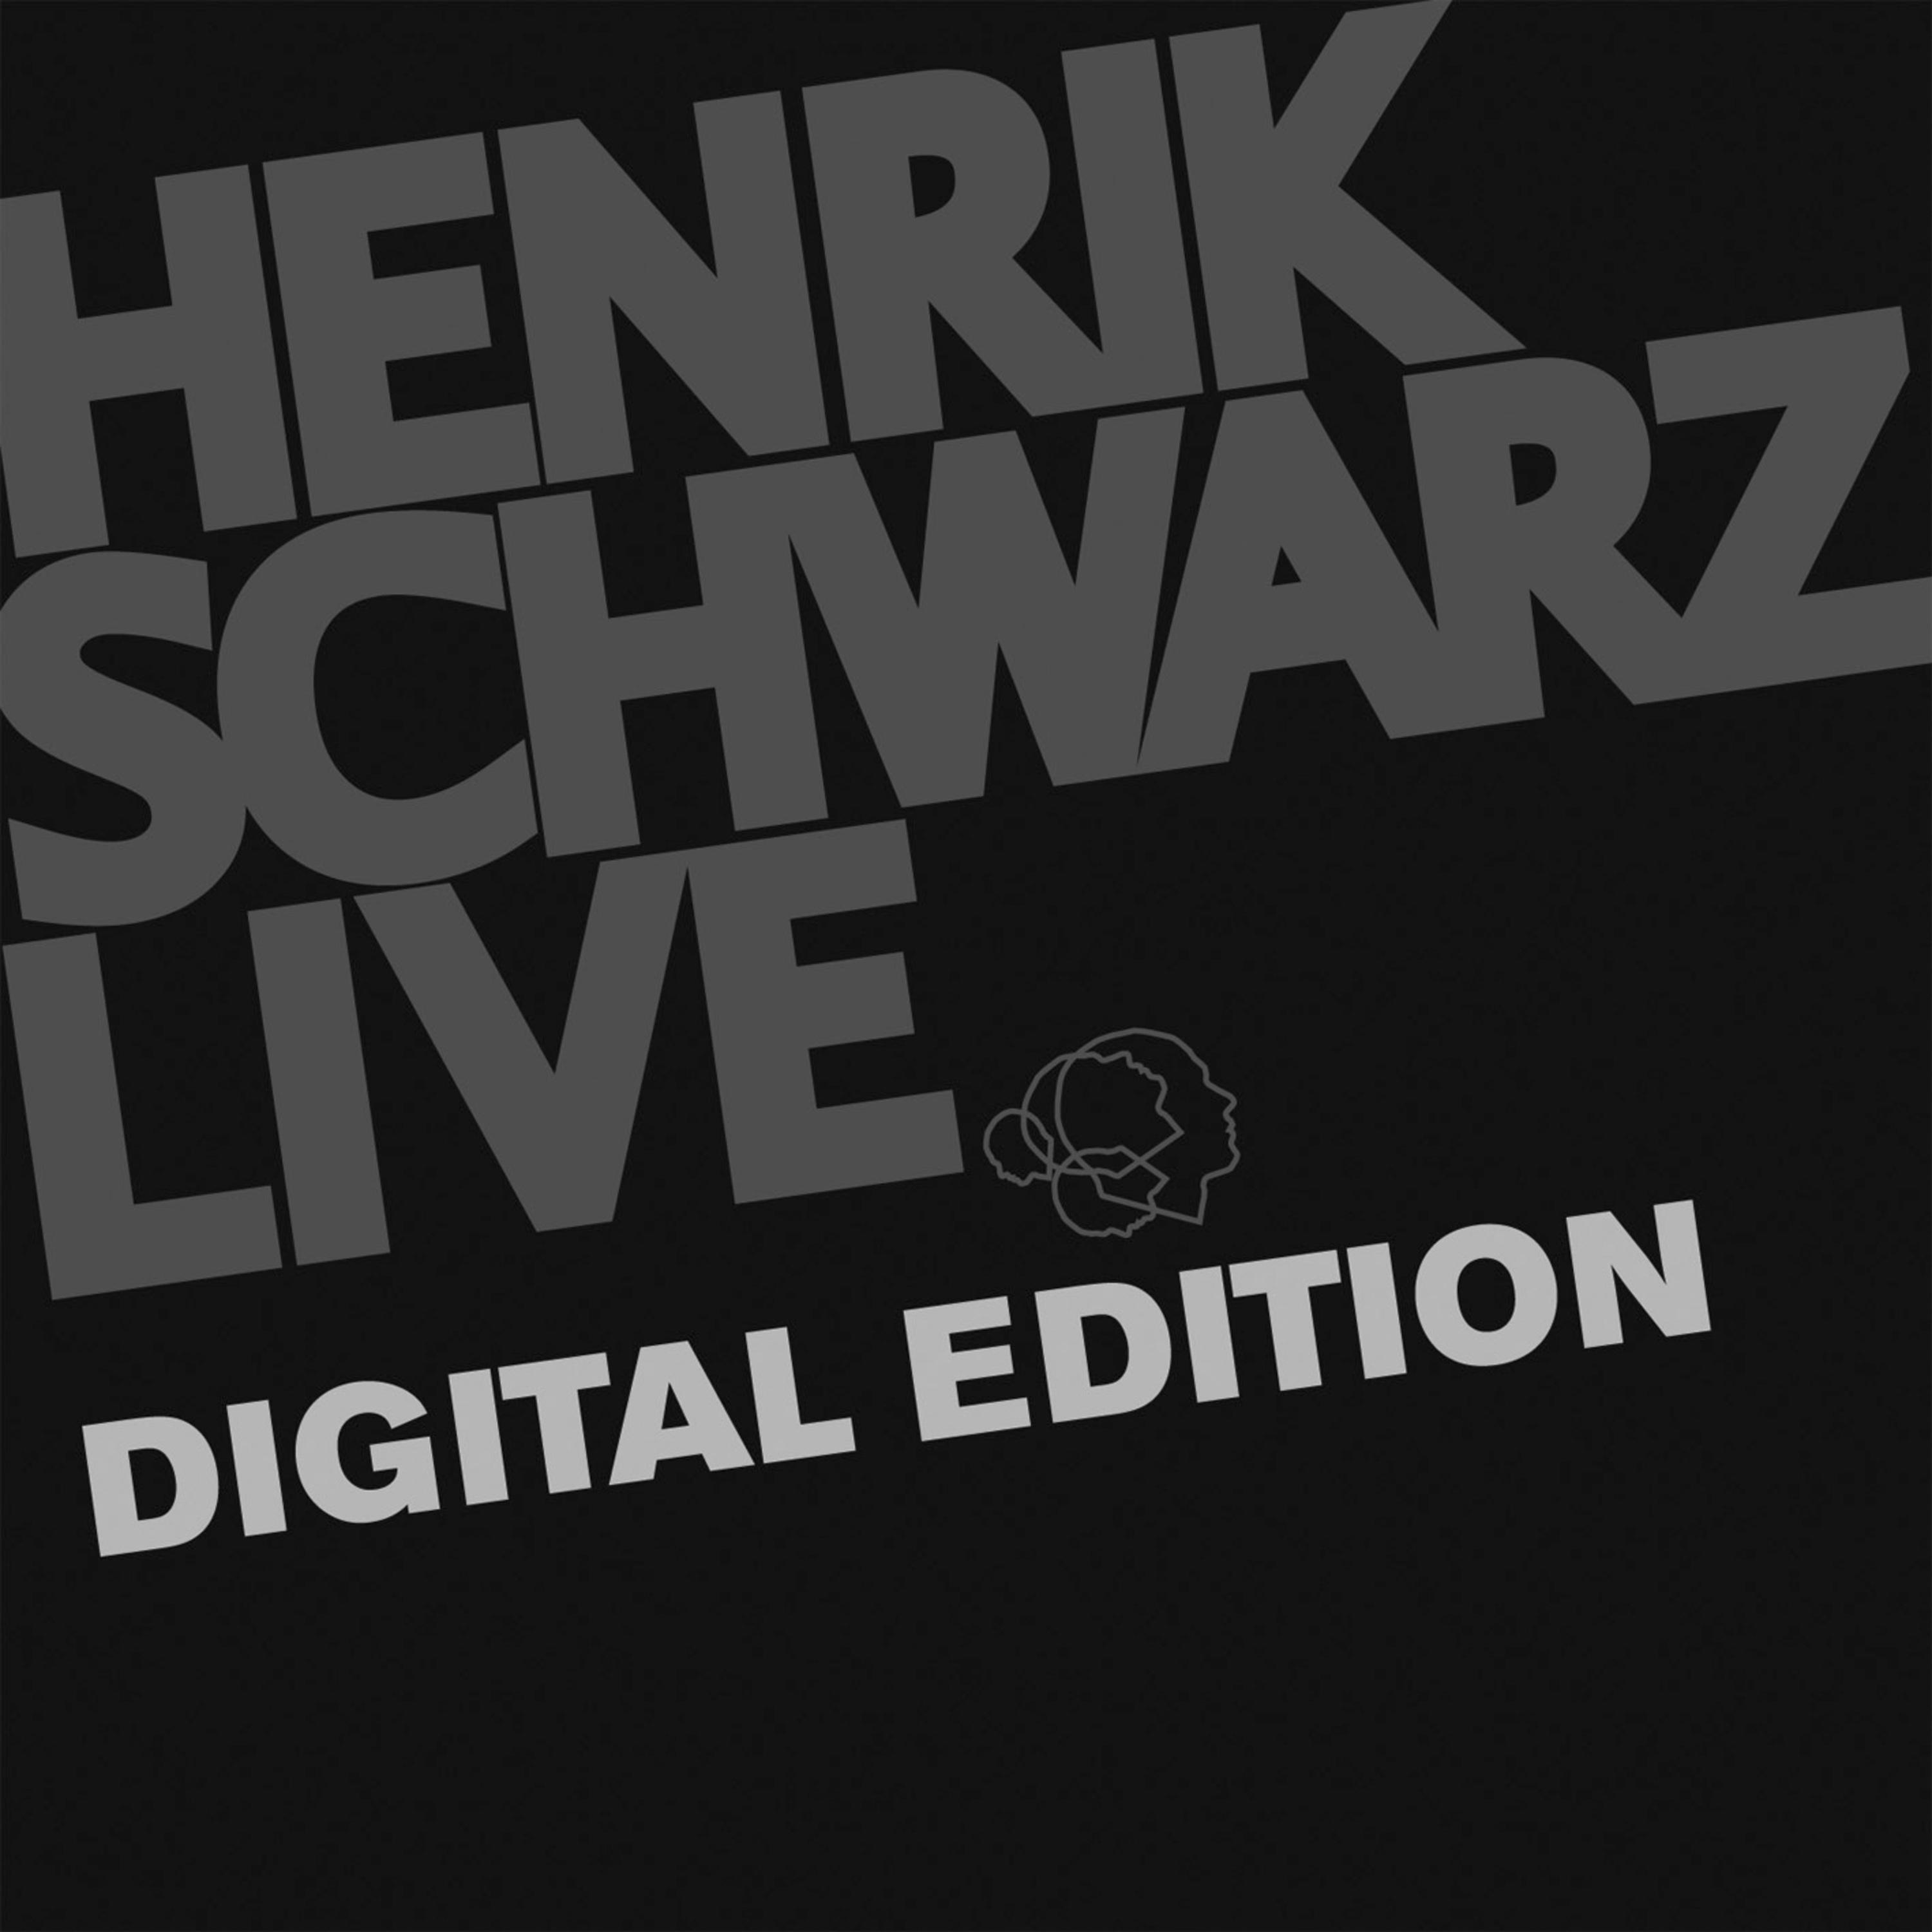 Stop, Look & Listen (Henrik Schwarz Live)